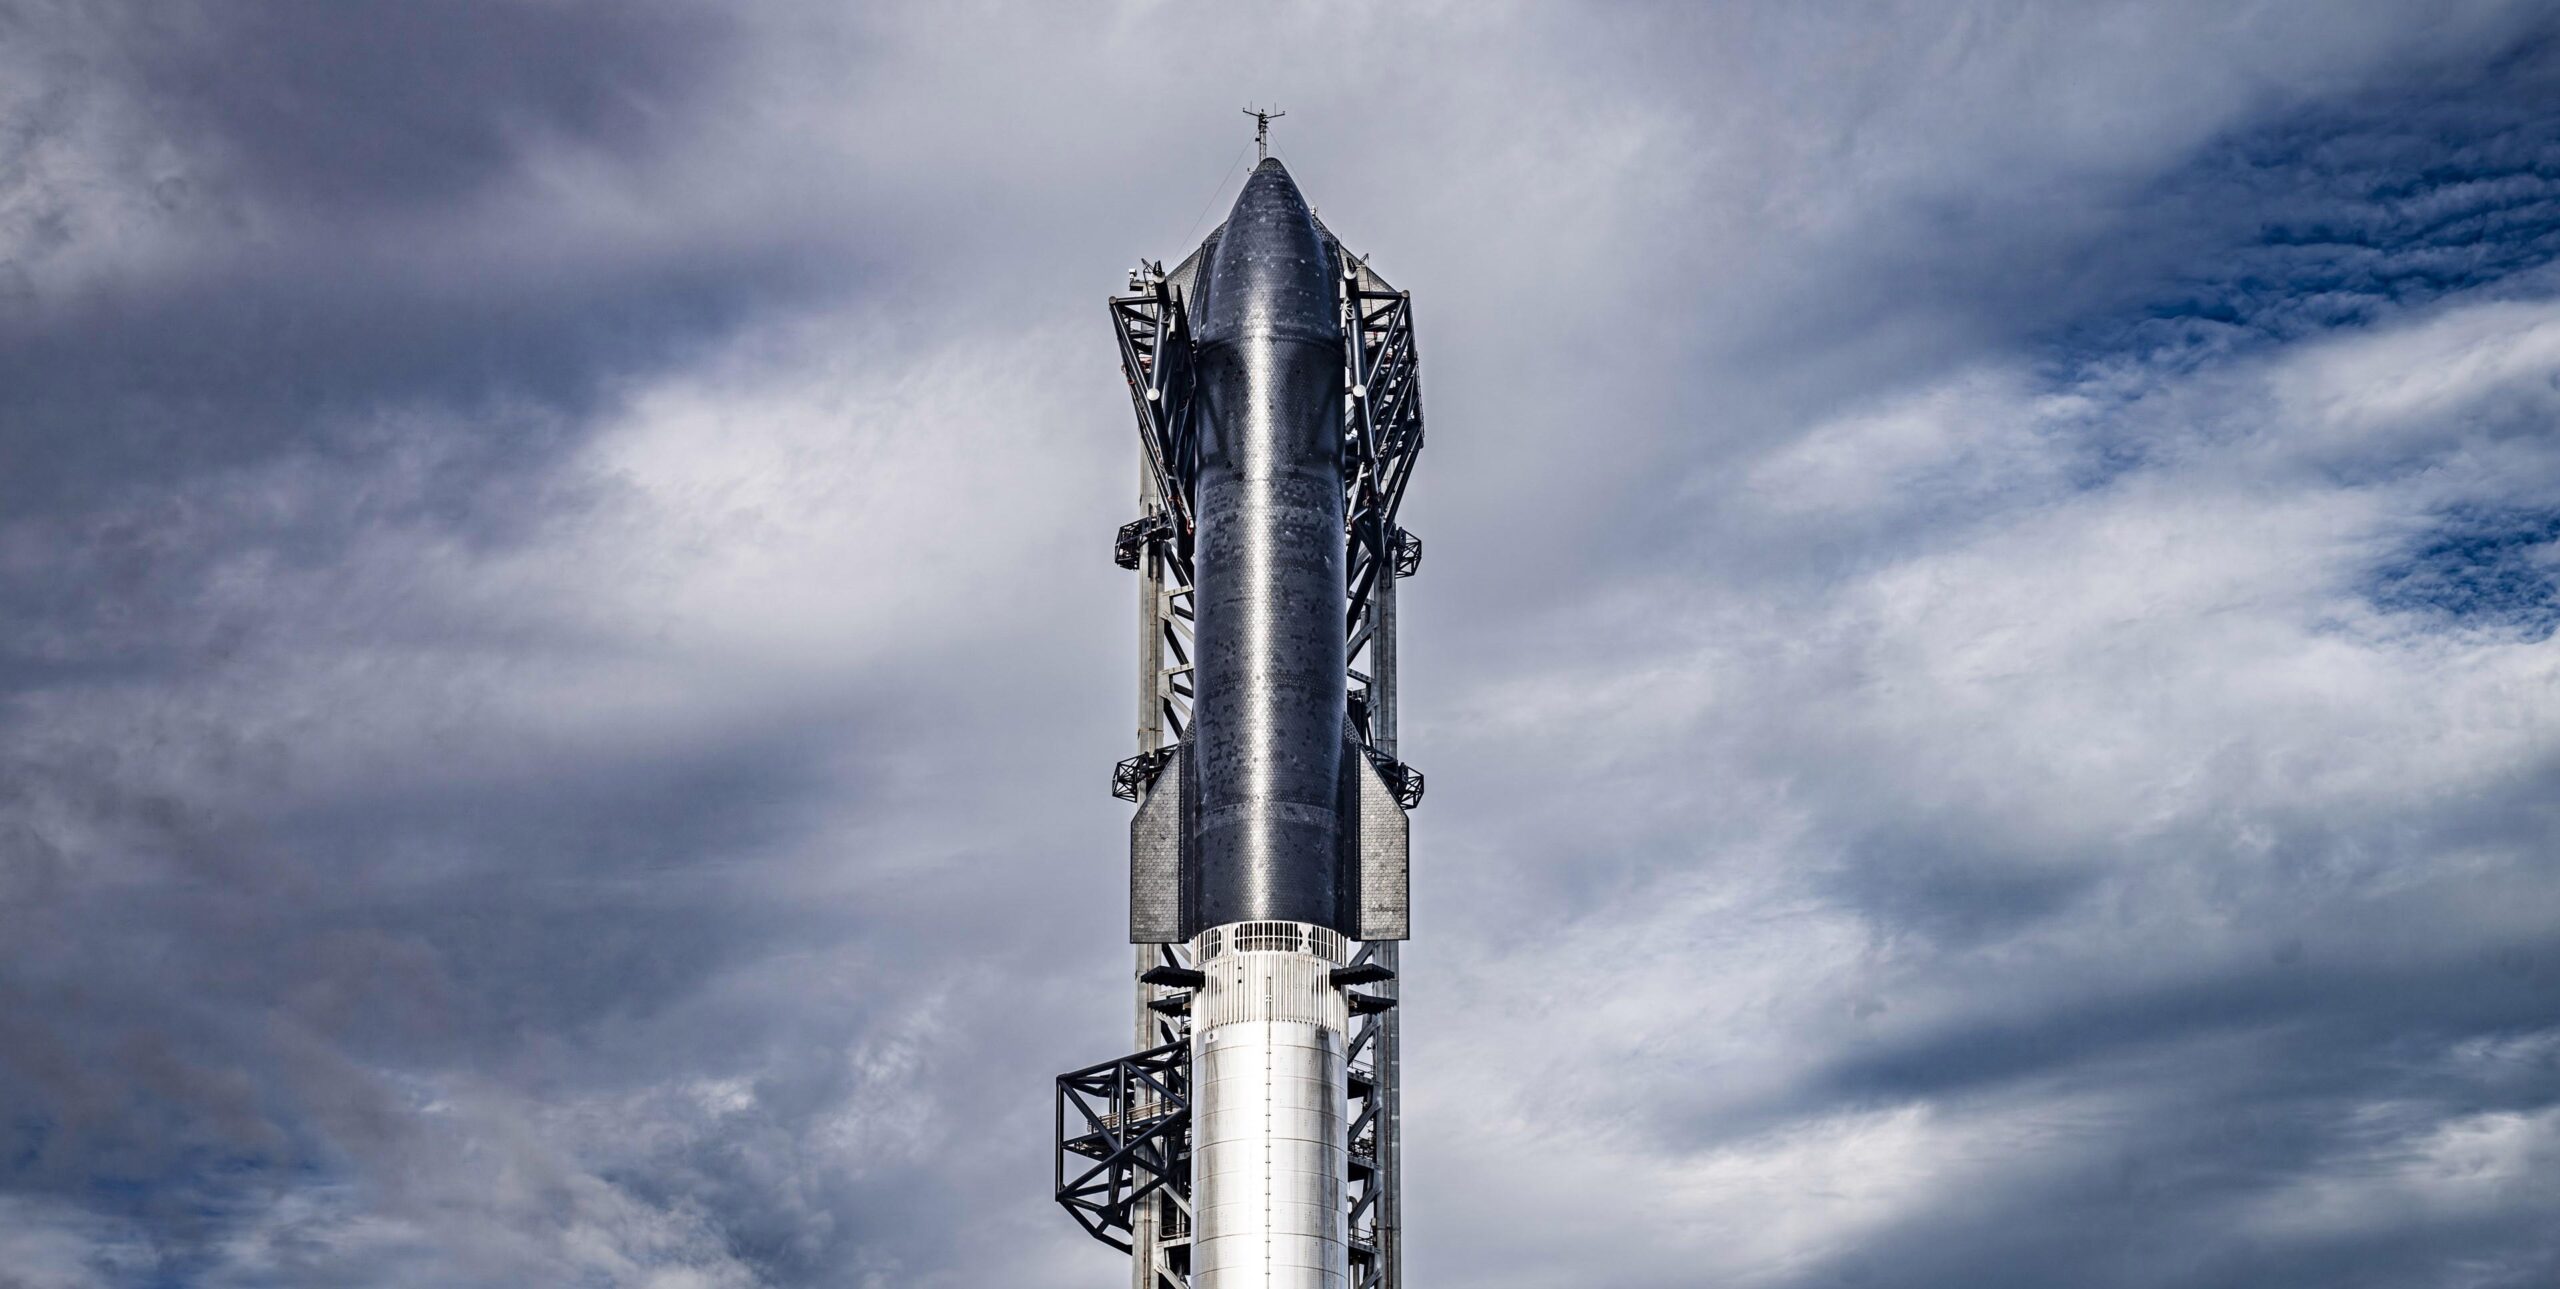 Dünyanın en güçlü roketi SpaceX Starship bugün fırlatılıyor: Nasıl izlenir?